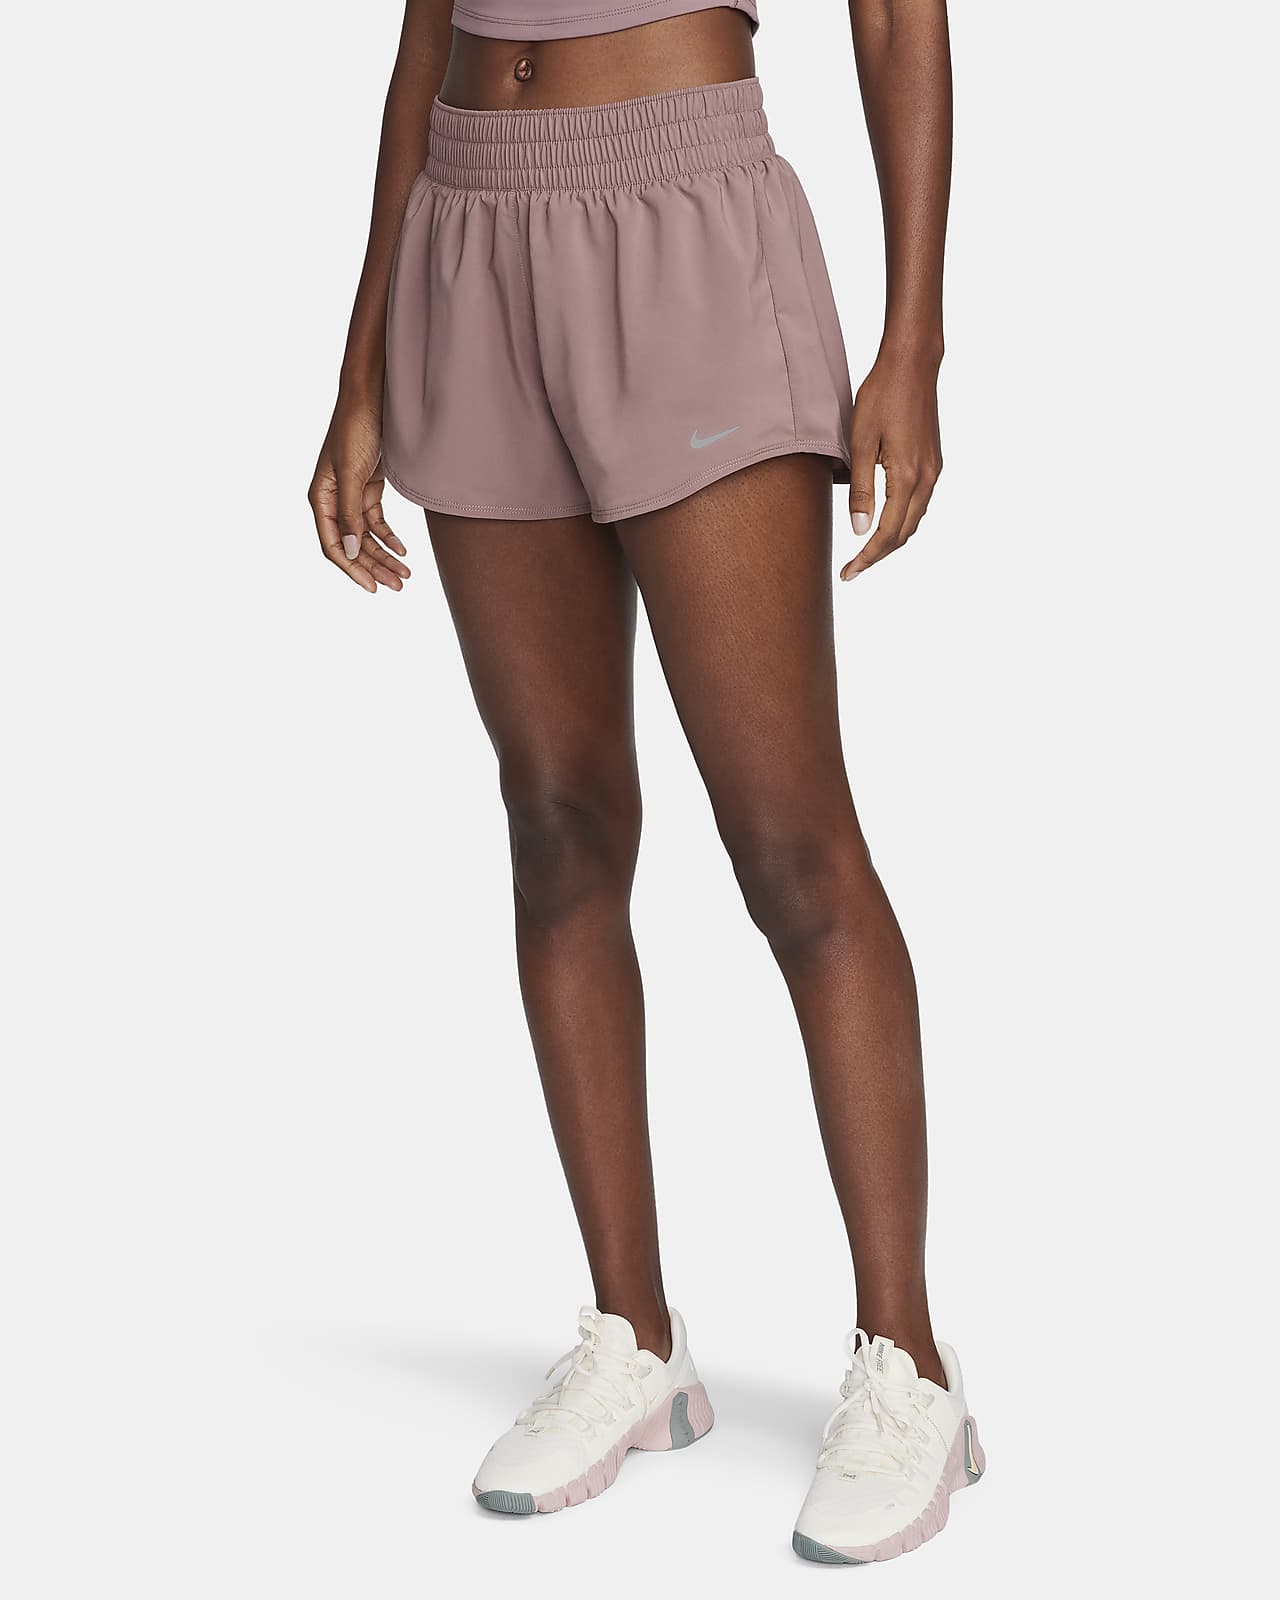 Shorts con forro de ropa interior Dri-FIT de tiro medio de 8 cm para mujer Nike One